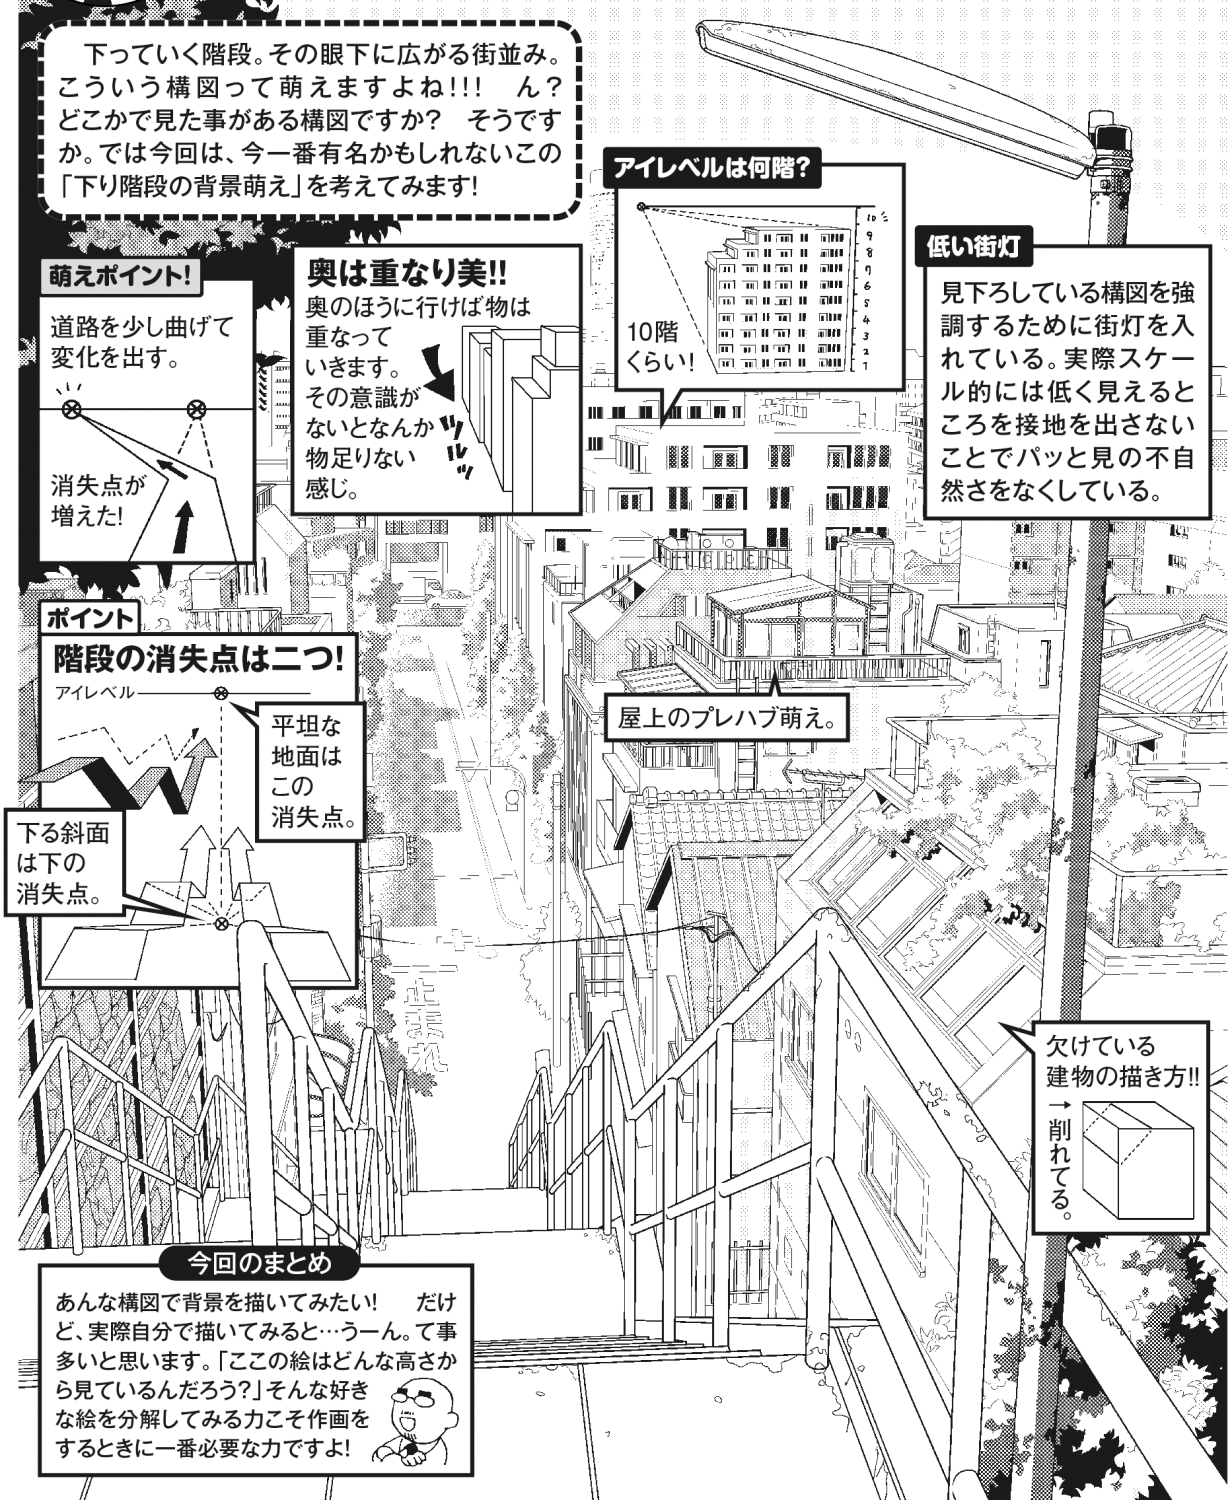 超級 背景講座 Maedaxの背景萌え 下り階段編 イラスト マンガ描き方ナビ